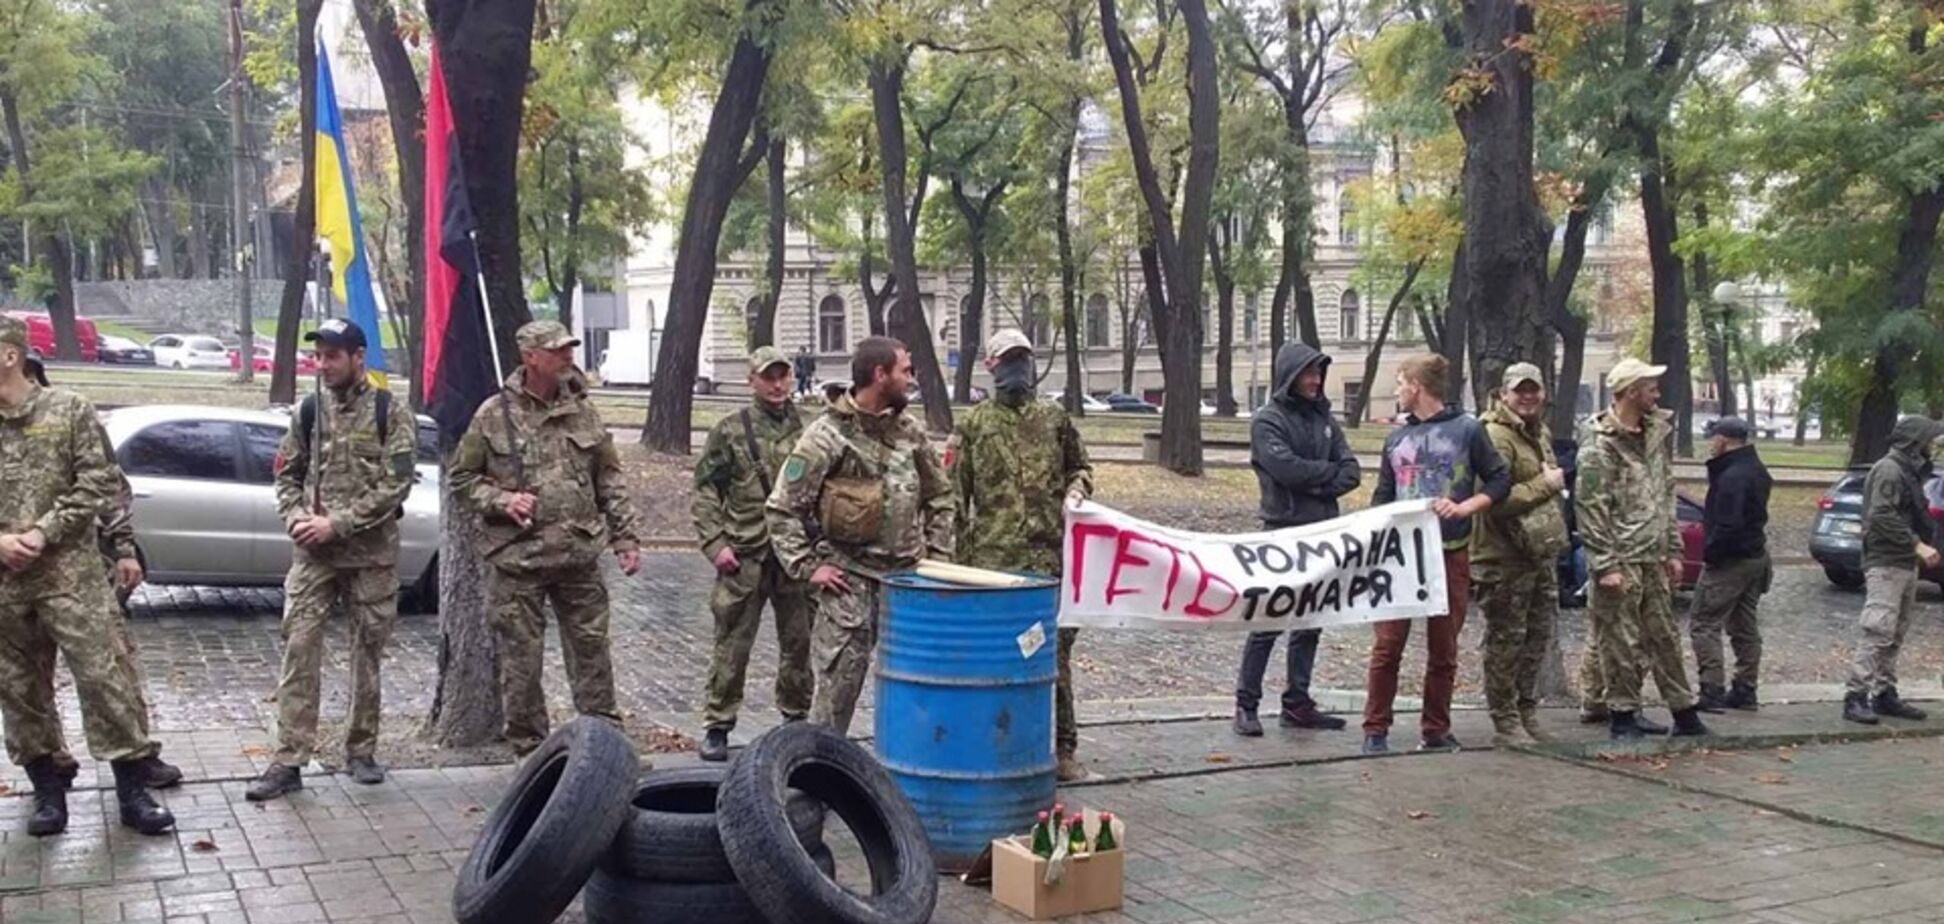 Бойцы Украинской добровольческой армии потребовали отставки прокурора Токаря